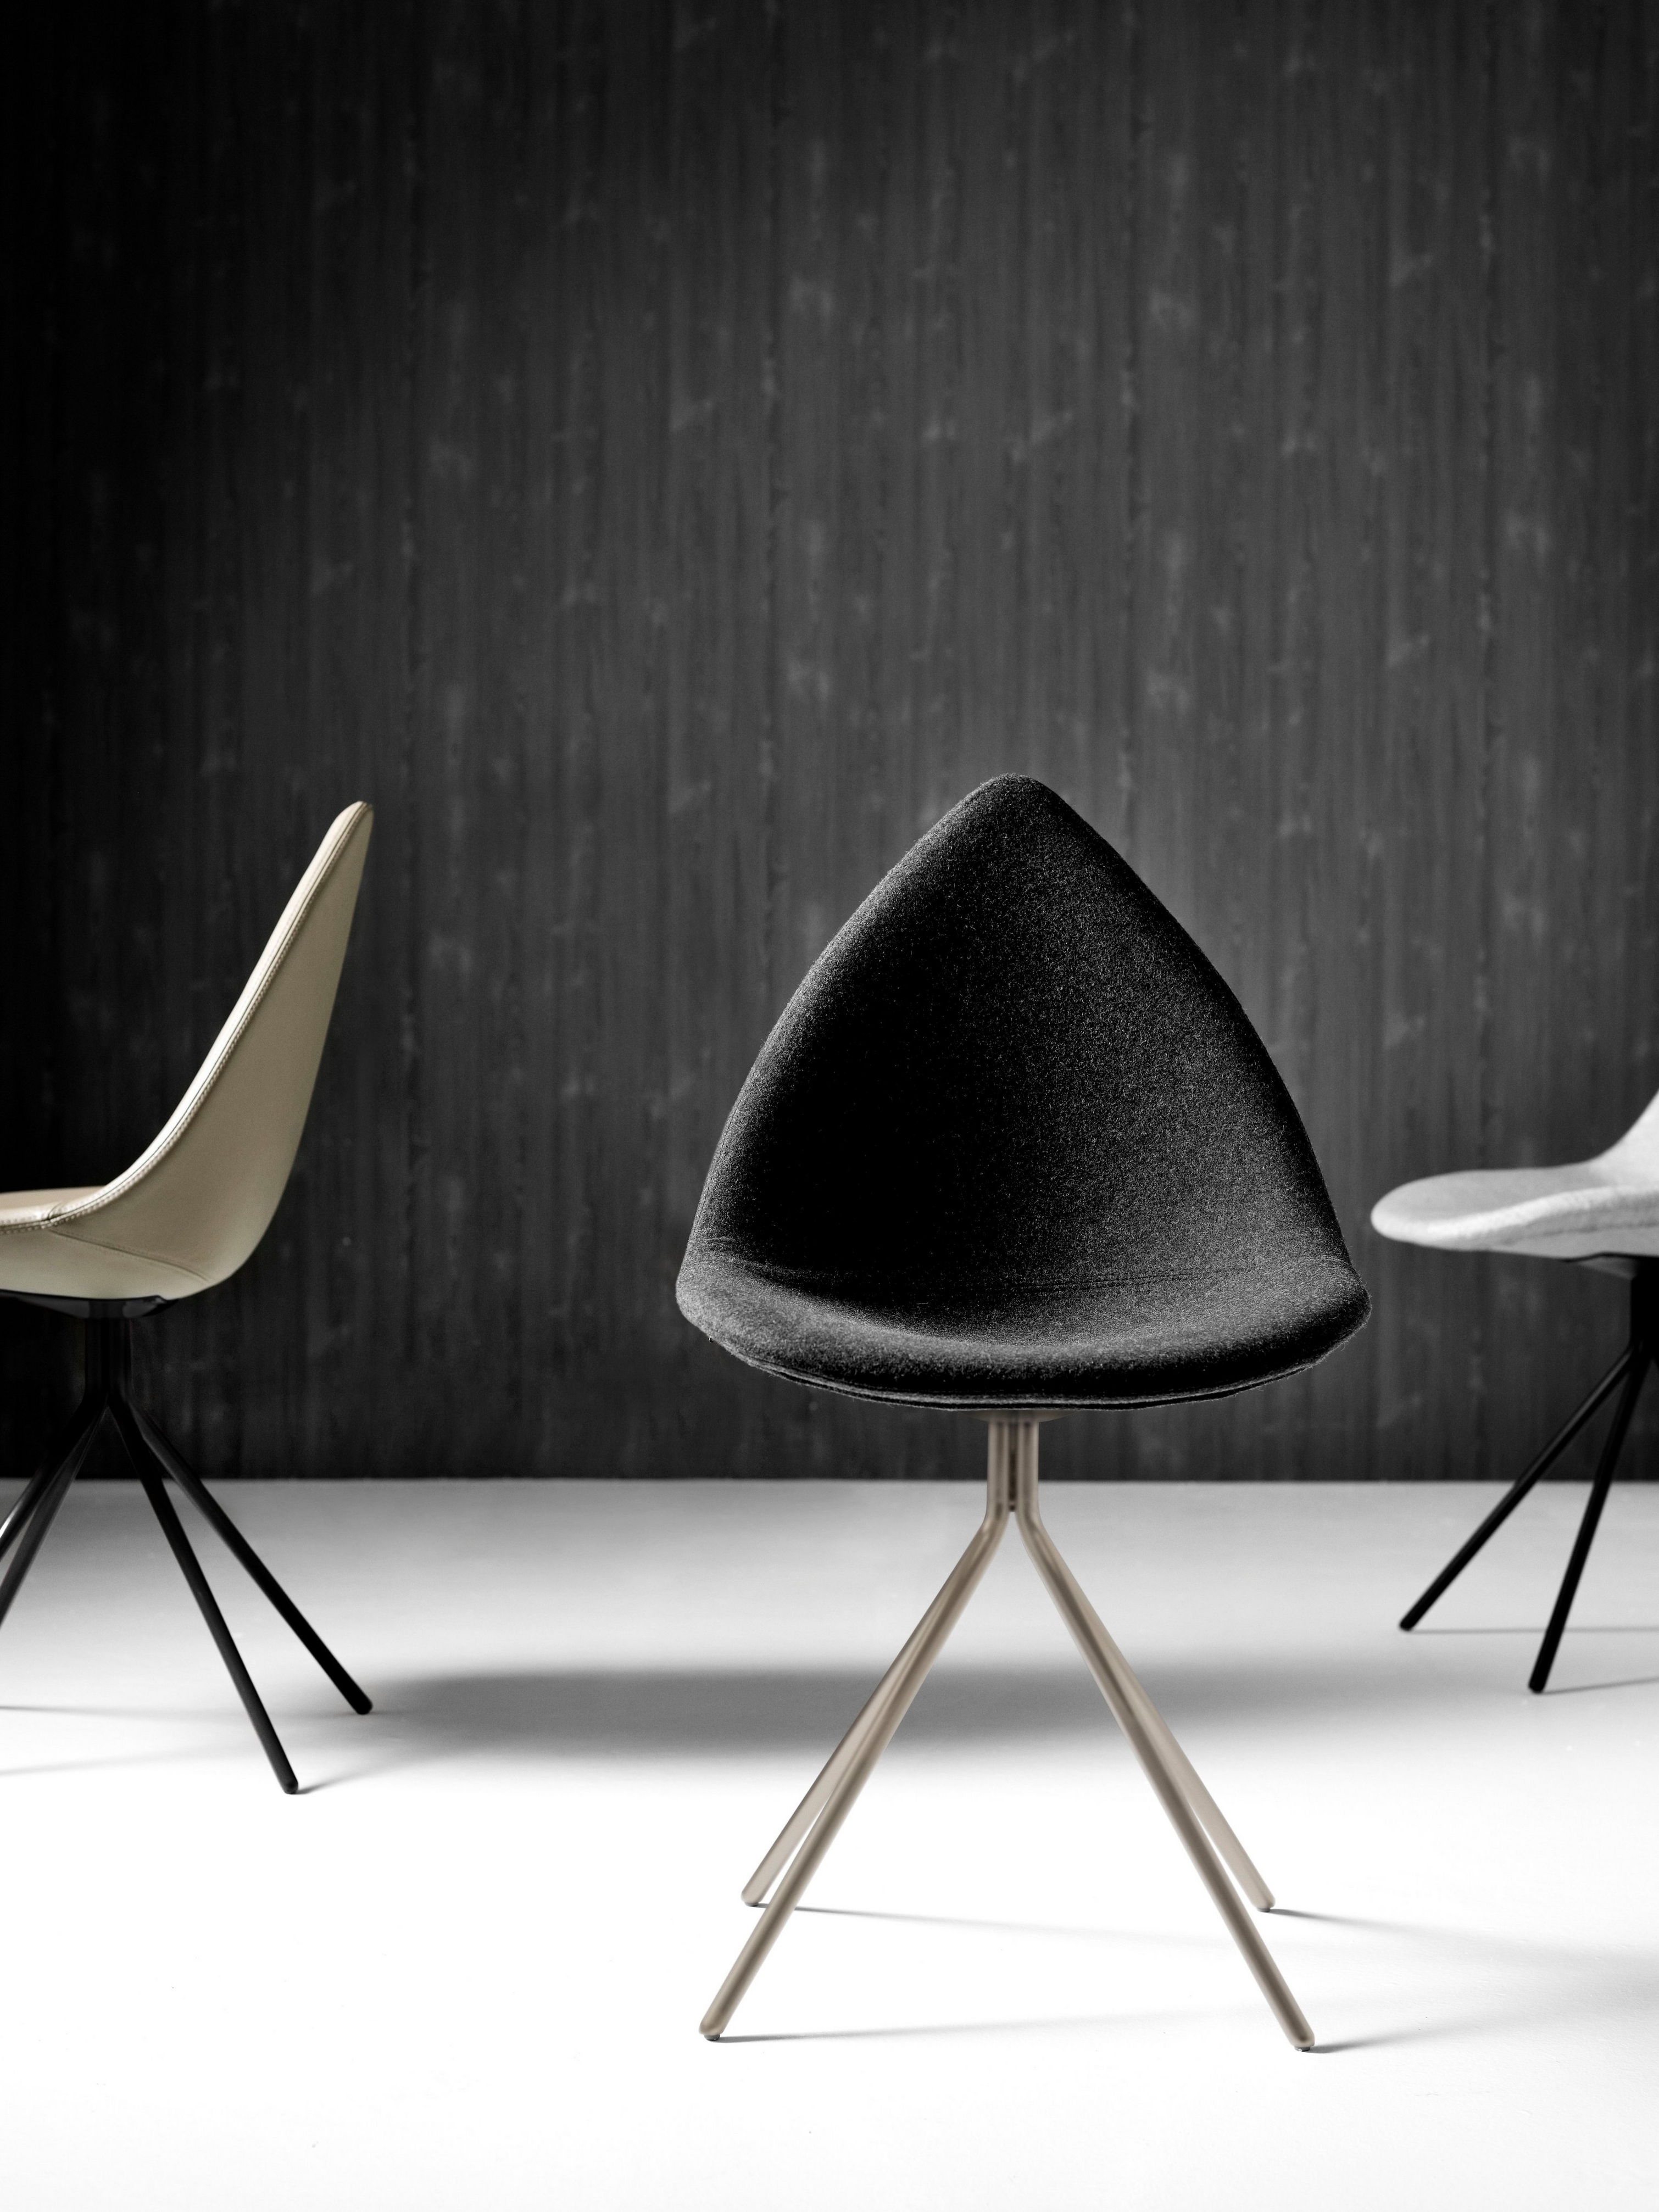 Modernas sillas Ottawa en un entorno monocromático con un fondo negro texturizado.